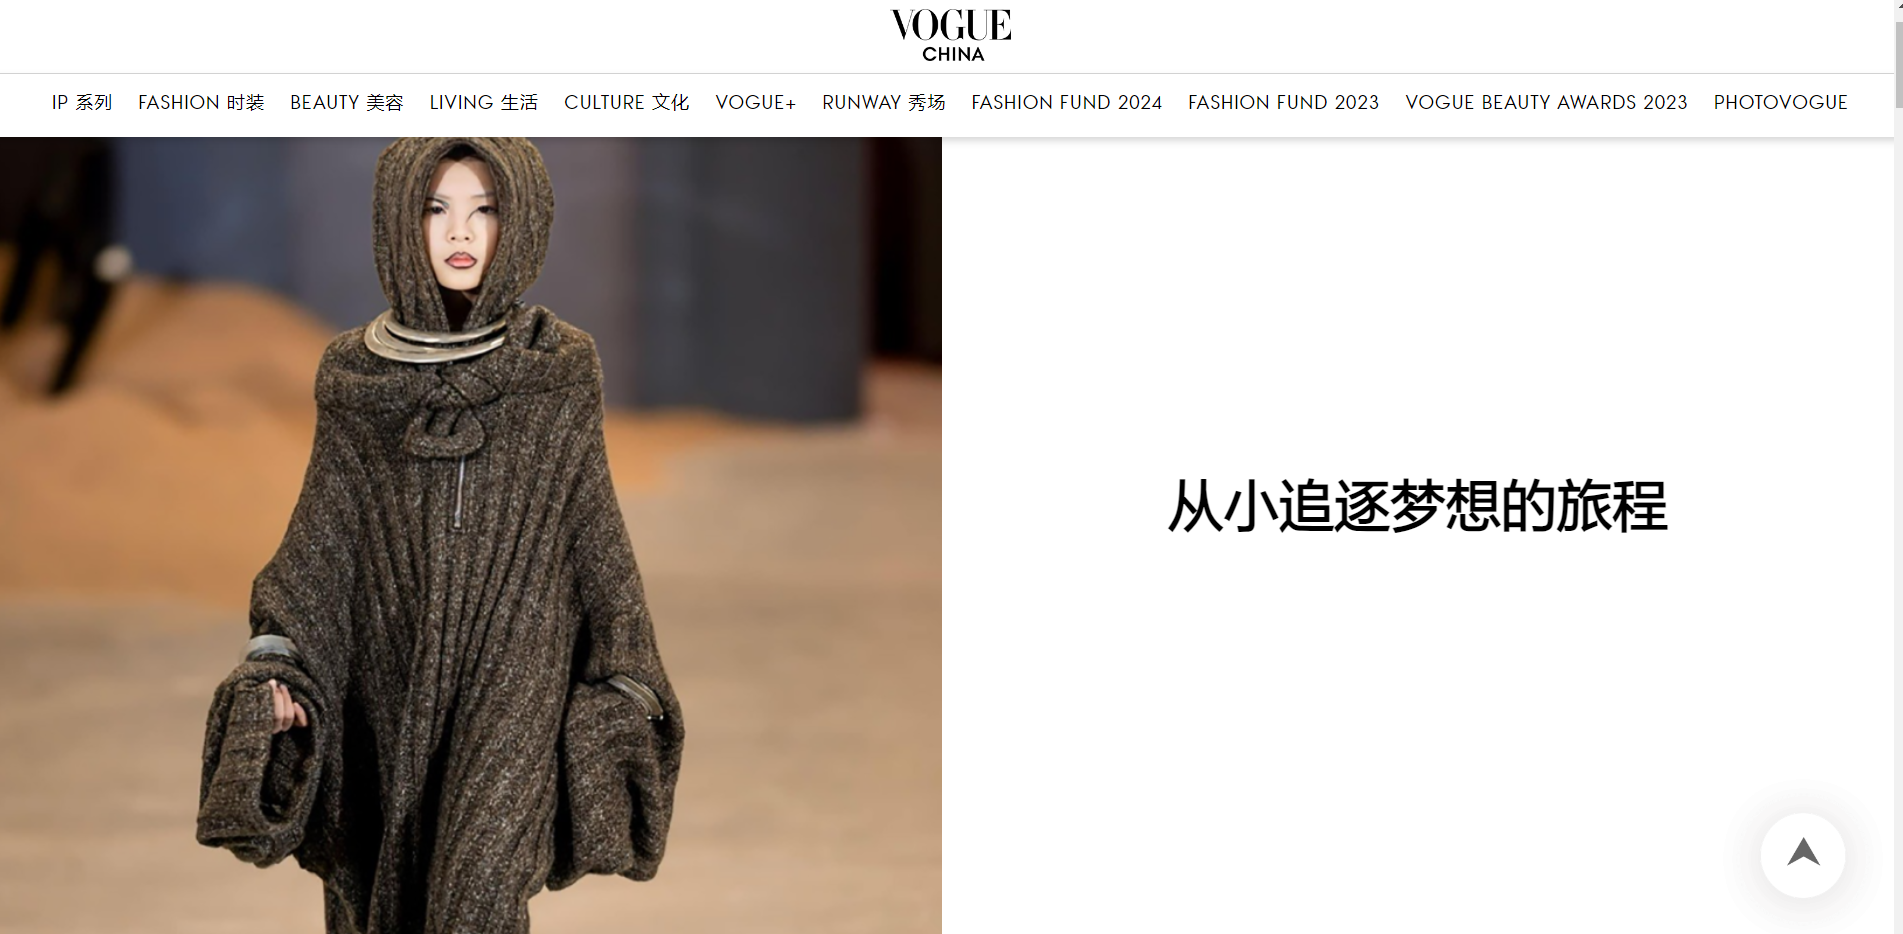 Mẫu nhí Việt 10 tuổi lần đầu đi diễn quốc tế đã lên ngay Vogue Trung Quốc, thần thái không đùa được- Ảnh 1.